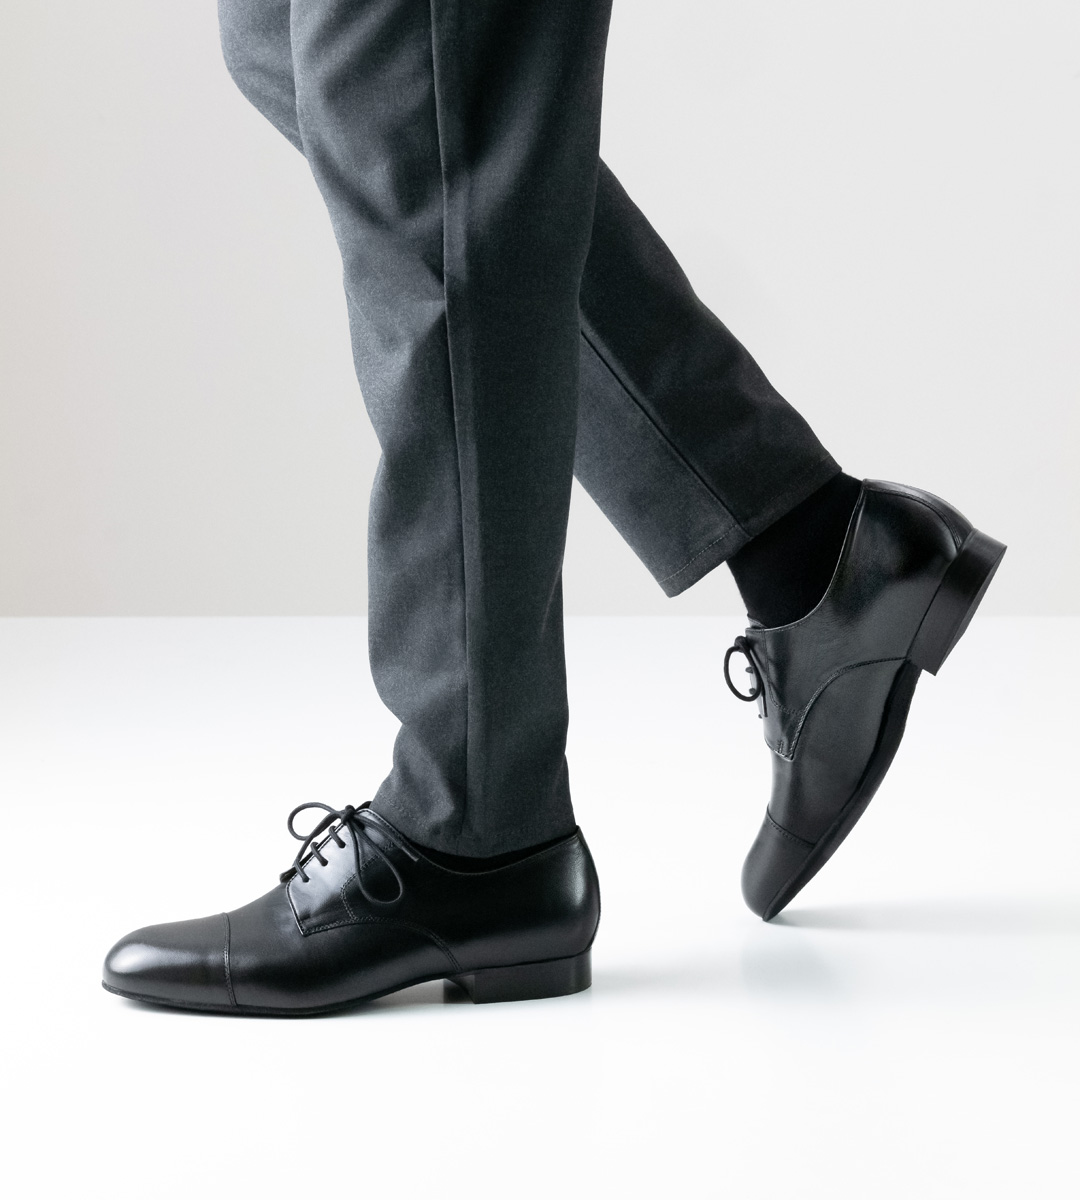 Herrentanzschuh in schwarzem Leder mit 2 cm hohem Absatz in Kombination mit grauer Hose